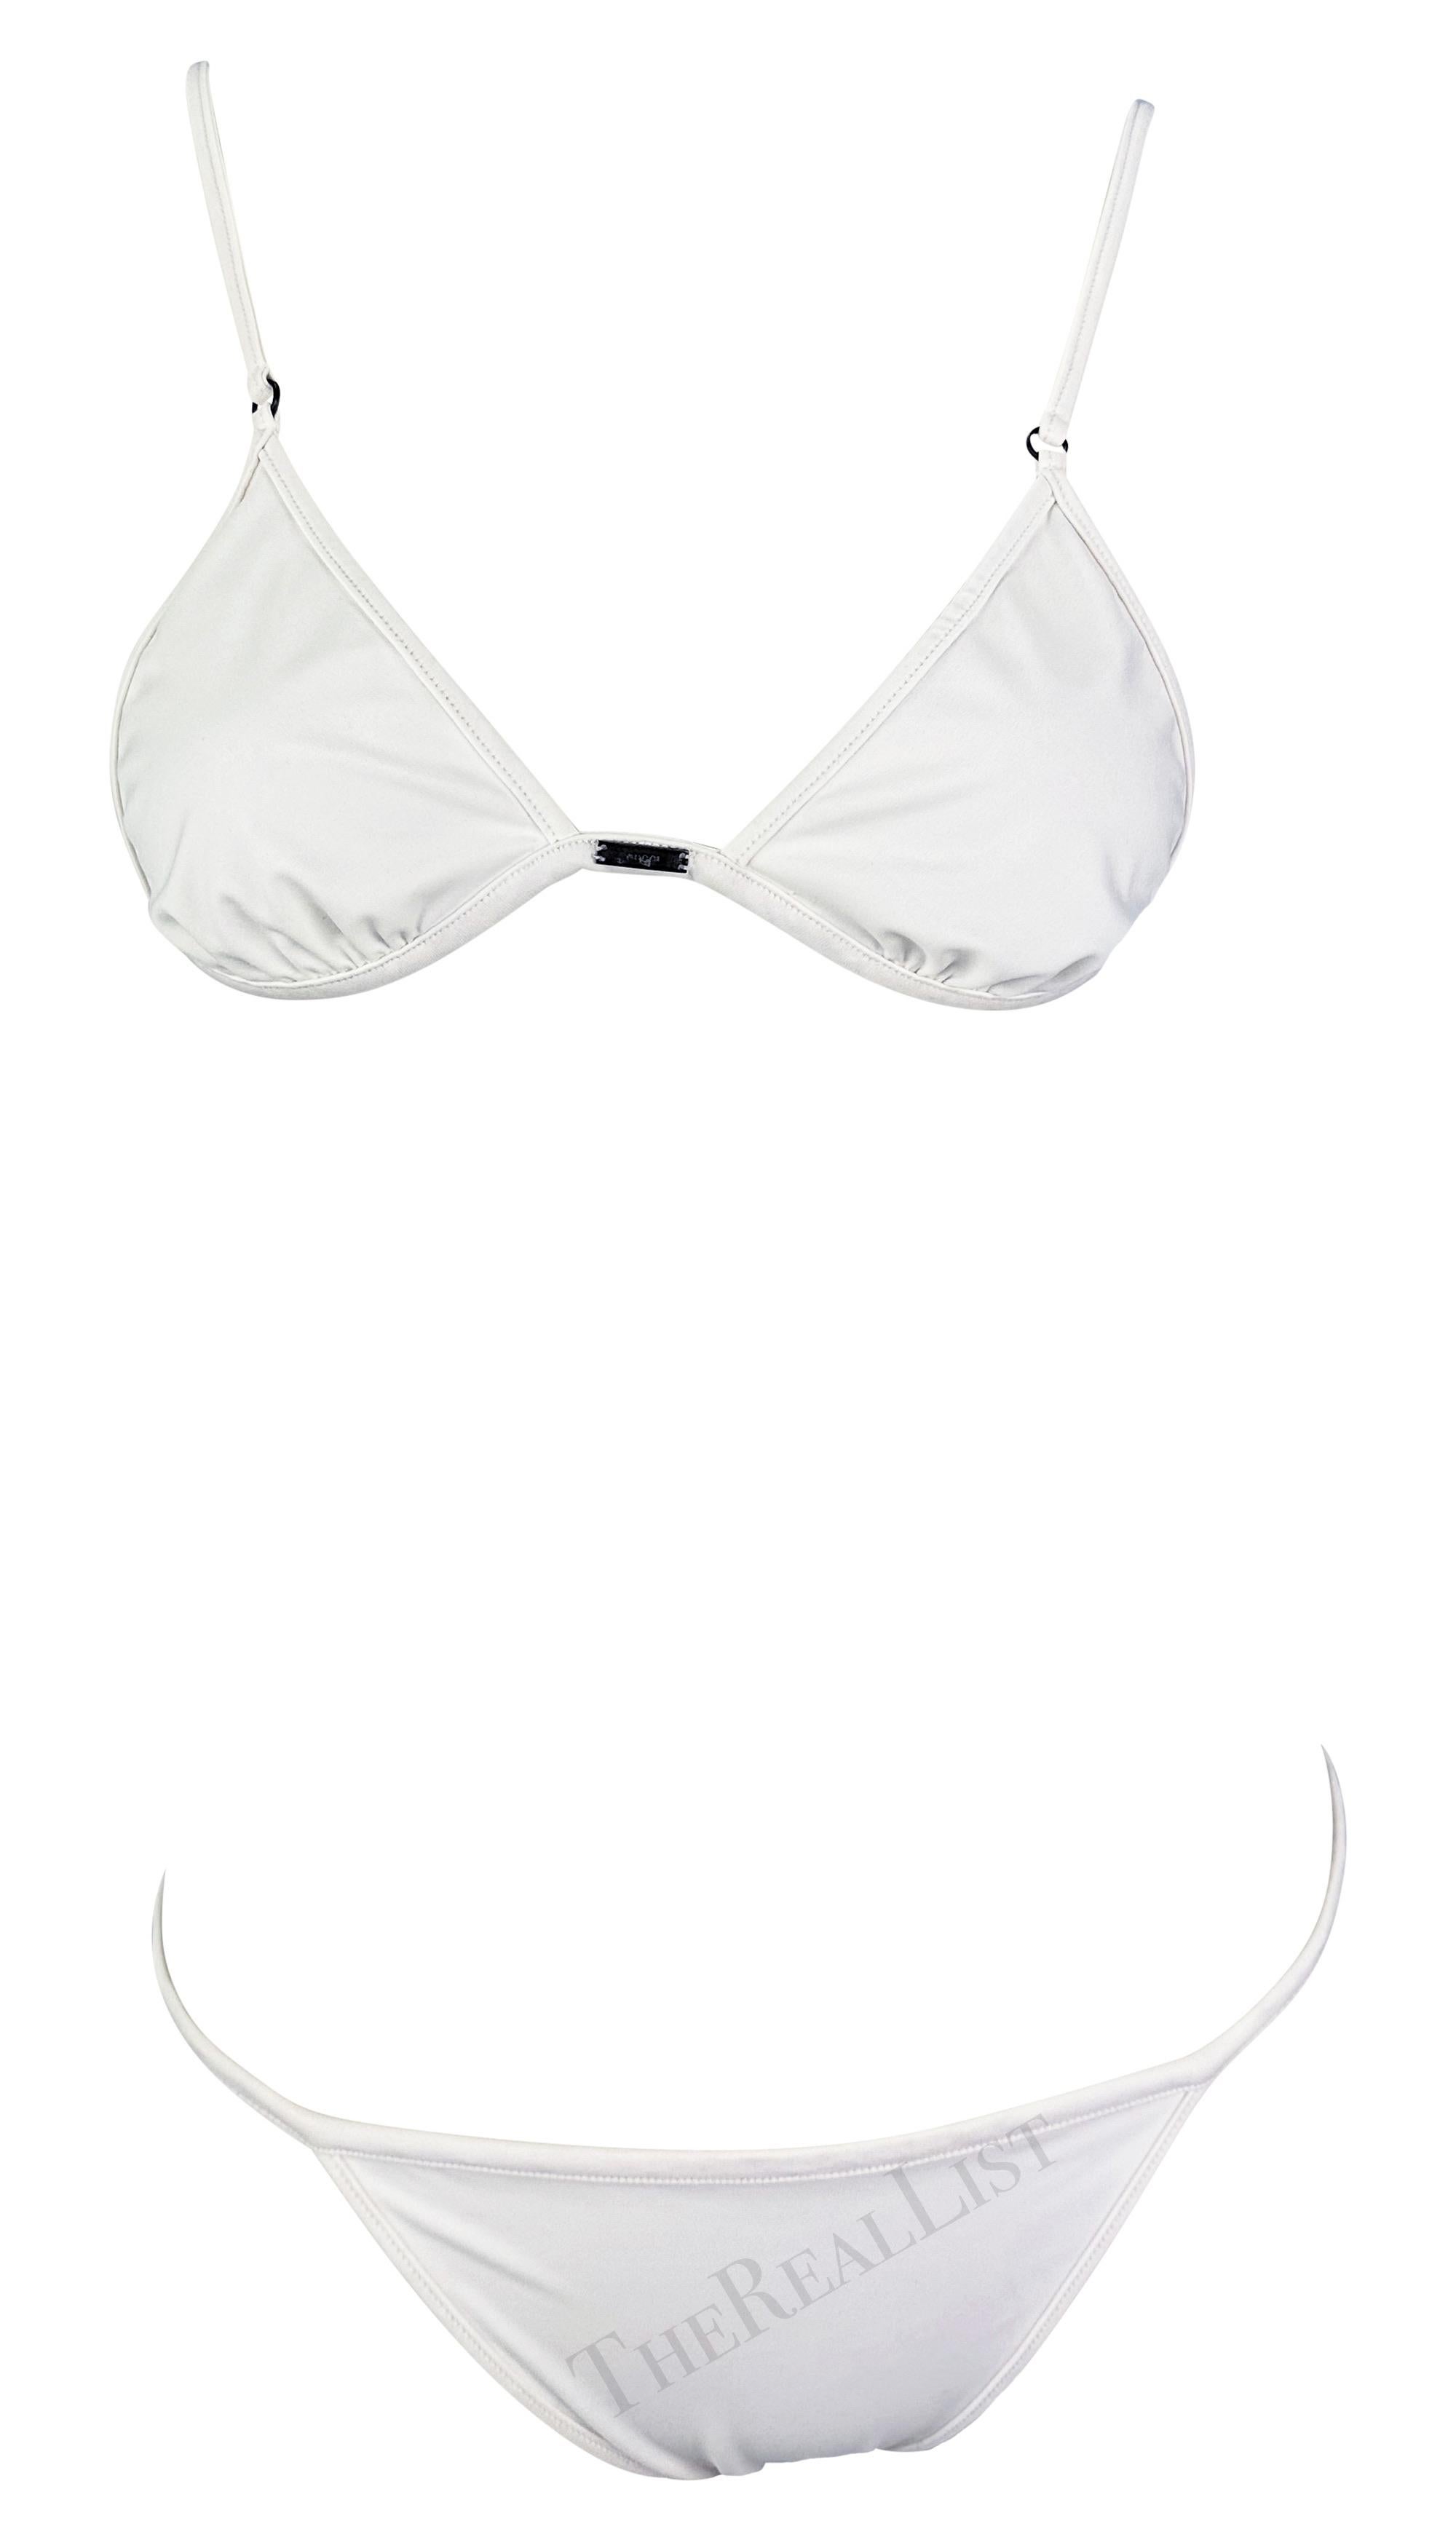 Sie präsentiert einen schicken weißen Gucci-Bikini, entworfen von Tom Ford. Dieser weiße Zweiteiler aus der Frühjahr/Sommer-Kollektion 2001 besteht aus einem dreieckigen Oberteil und einem dünnen Unterteil mit Schnüren. Das Oberteil verfügt über